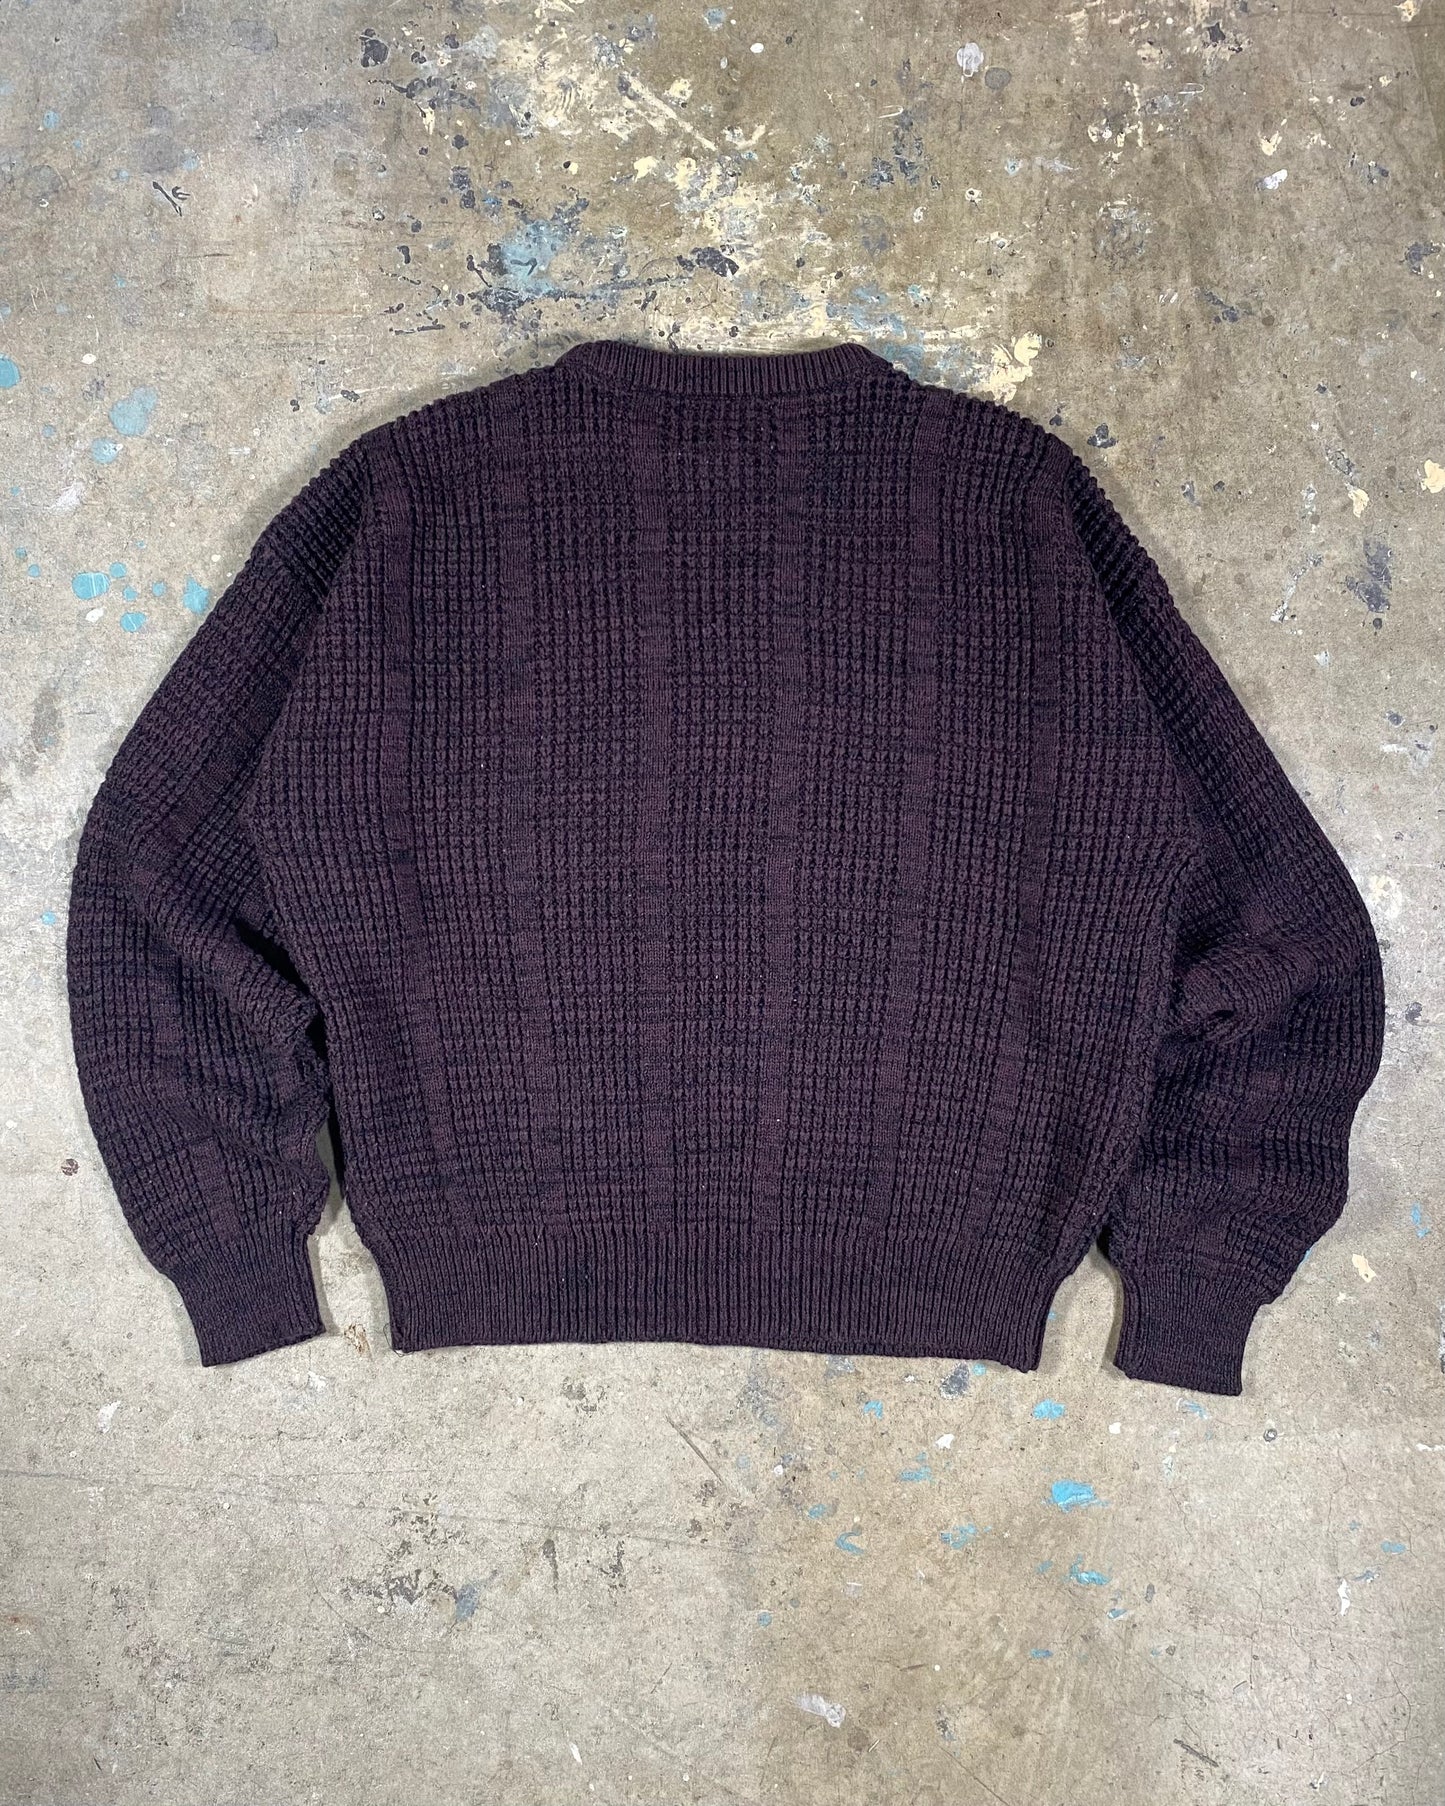 90s Purple Knit Sweater (L)